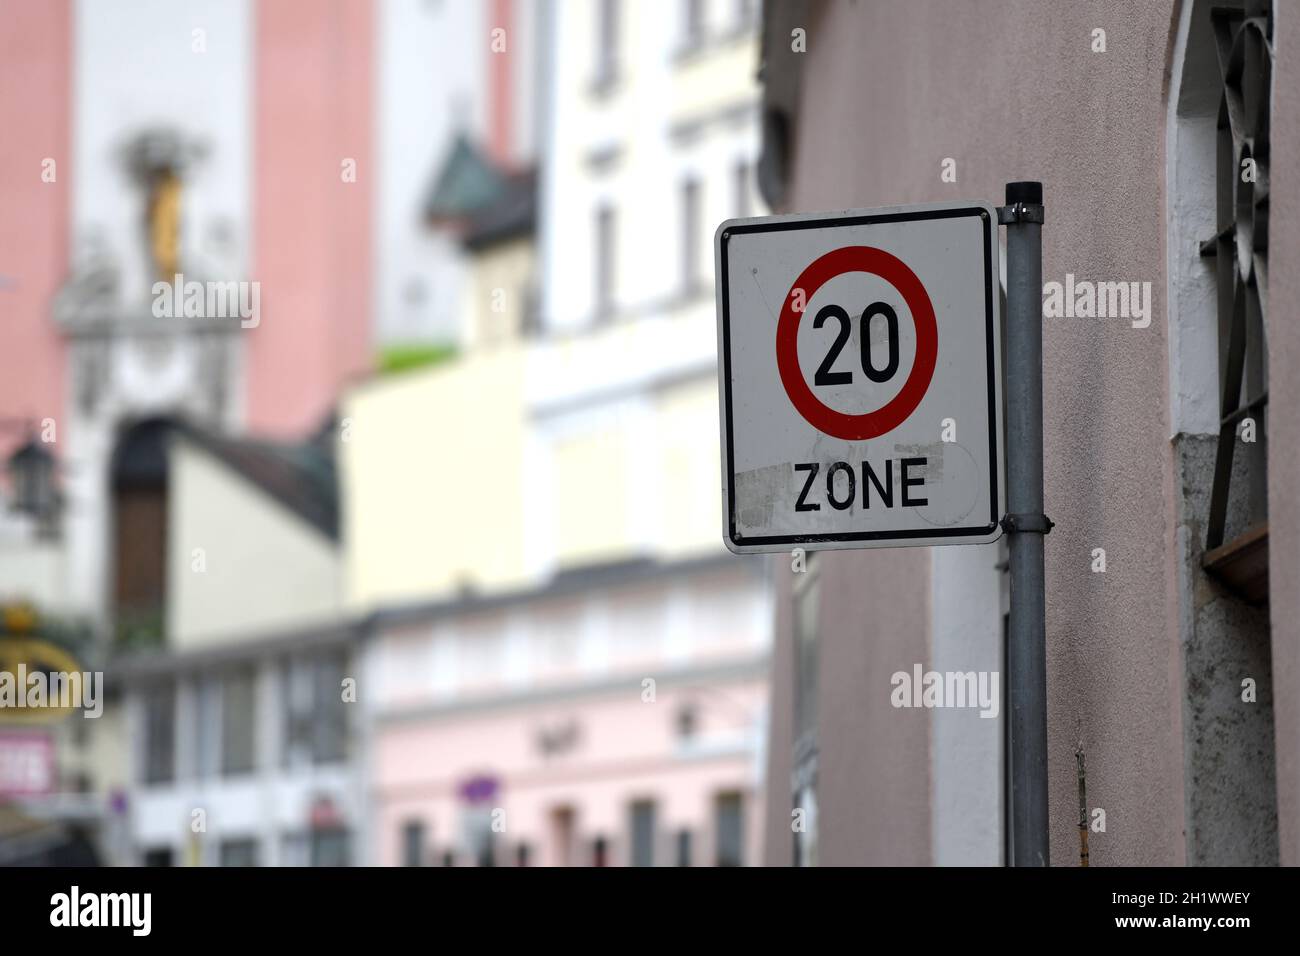 20 km/h Begegnungszone in Passau, Bayern, Deutschland, Europa - 20 km / h encounter zone in Passau, Bavaria, Germany, Europe Stock Photo